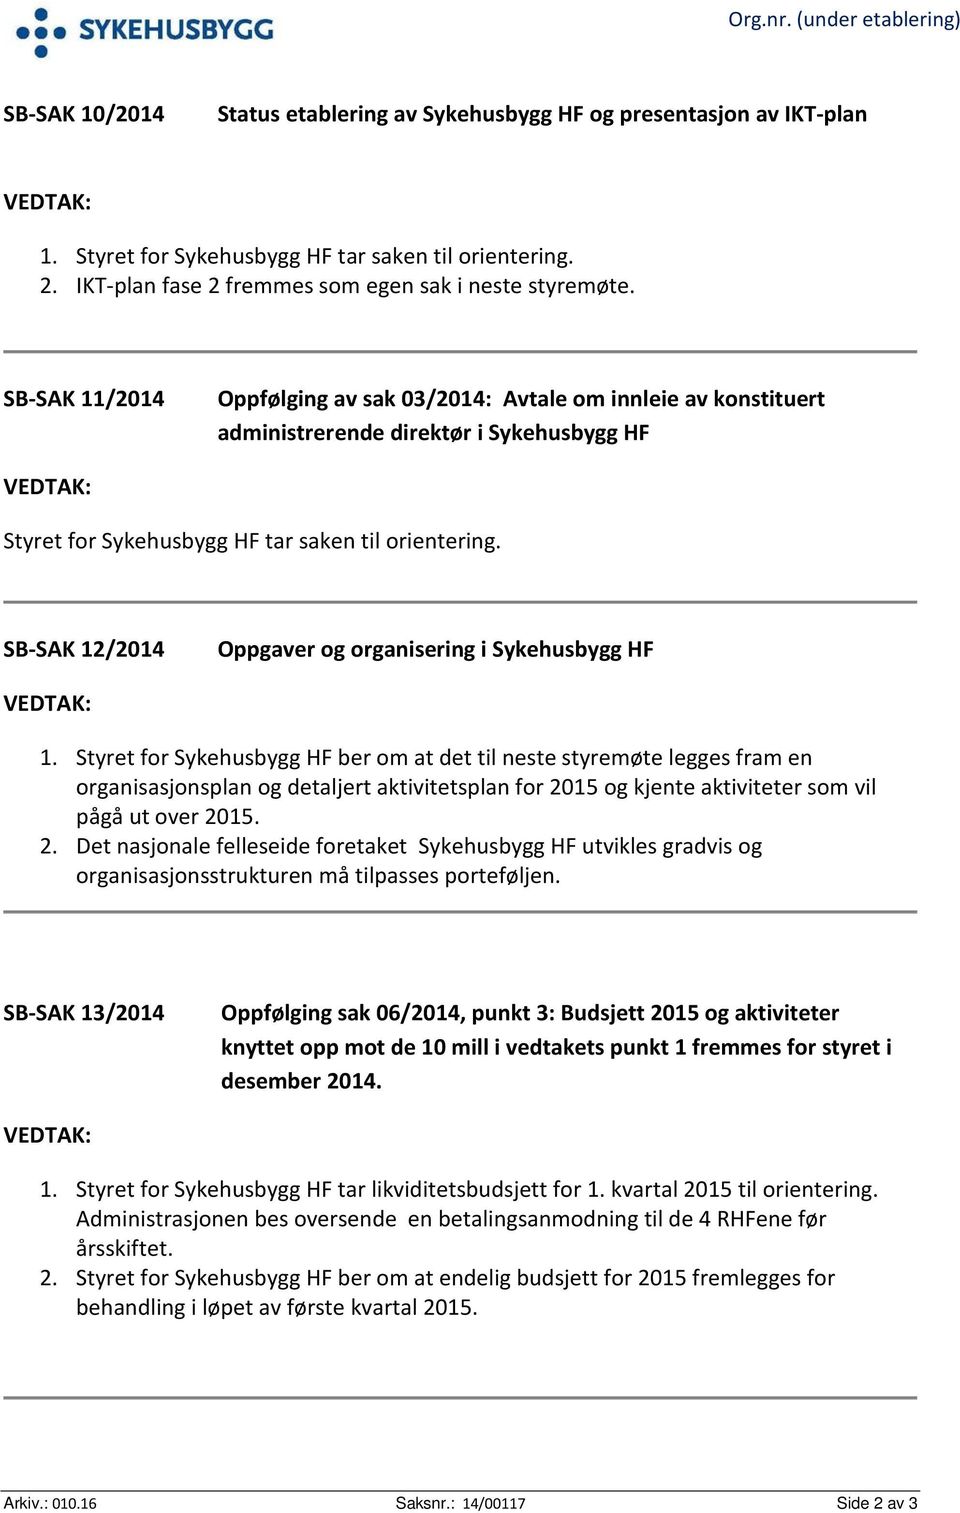 SB-SAK 11/2014 Oppfølging av sak 03/2014: Avtale om innleie av konstituert administrerende direktør i Sykehusbygg HF VEDTAK: Styret for Sykehusbygg HF tar saken til orientering.